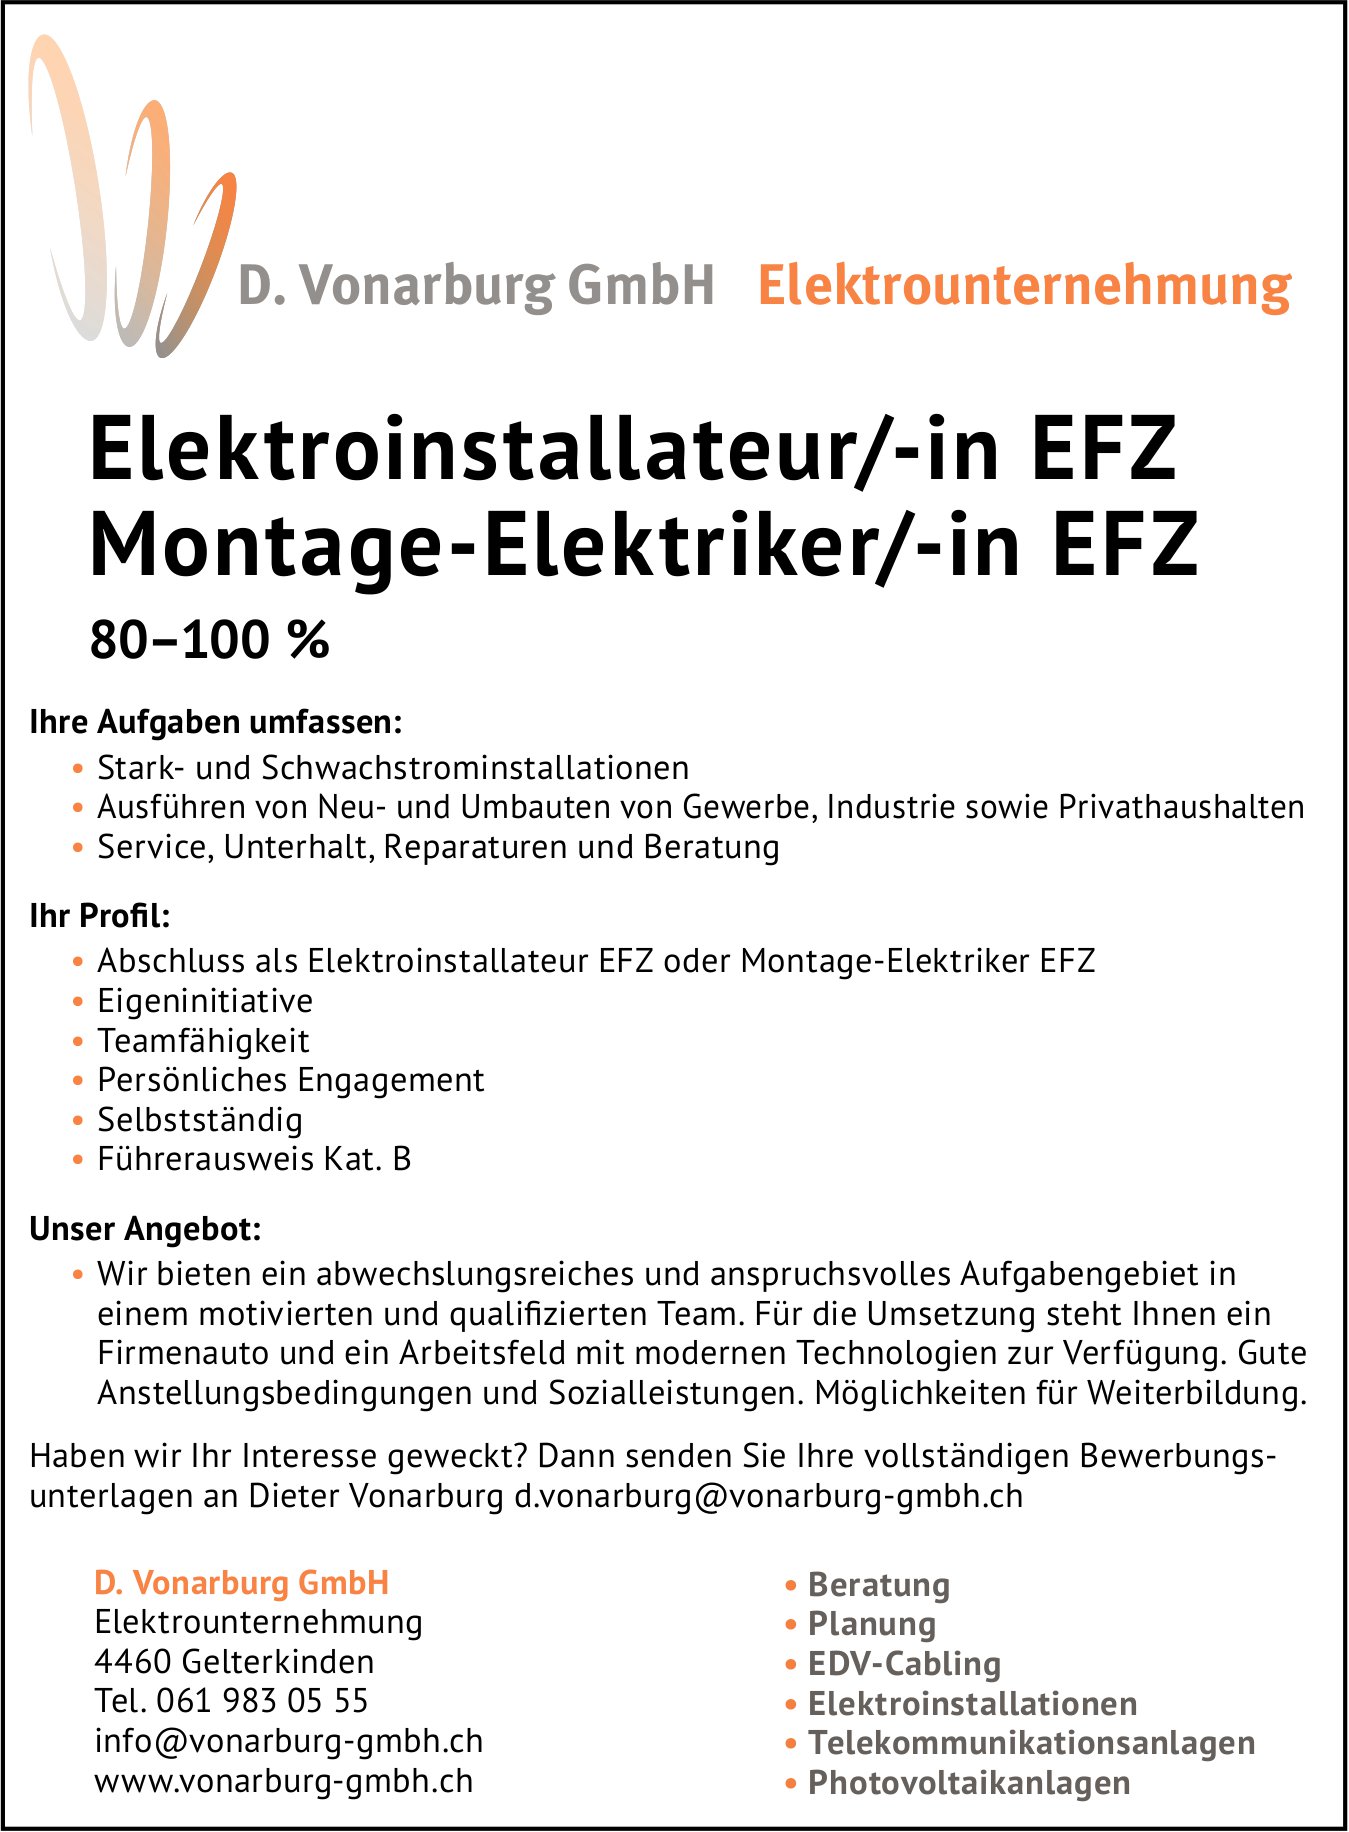 Montage-Elektriker/-in EFZ, Elektroinstallateur/-in EFZ, D. Vonarburg GmbH, Gelterkinden, gesucht